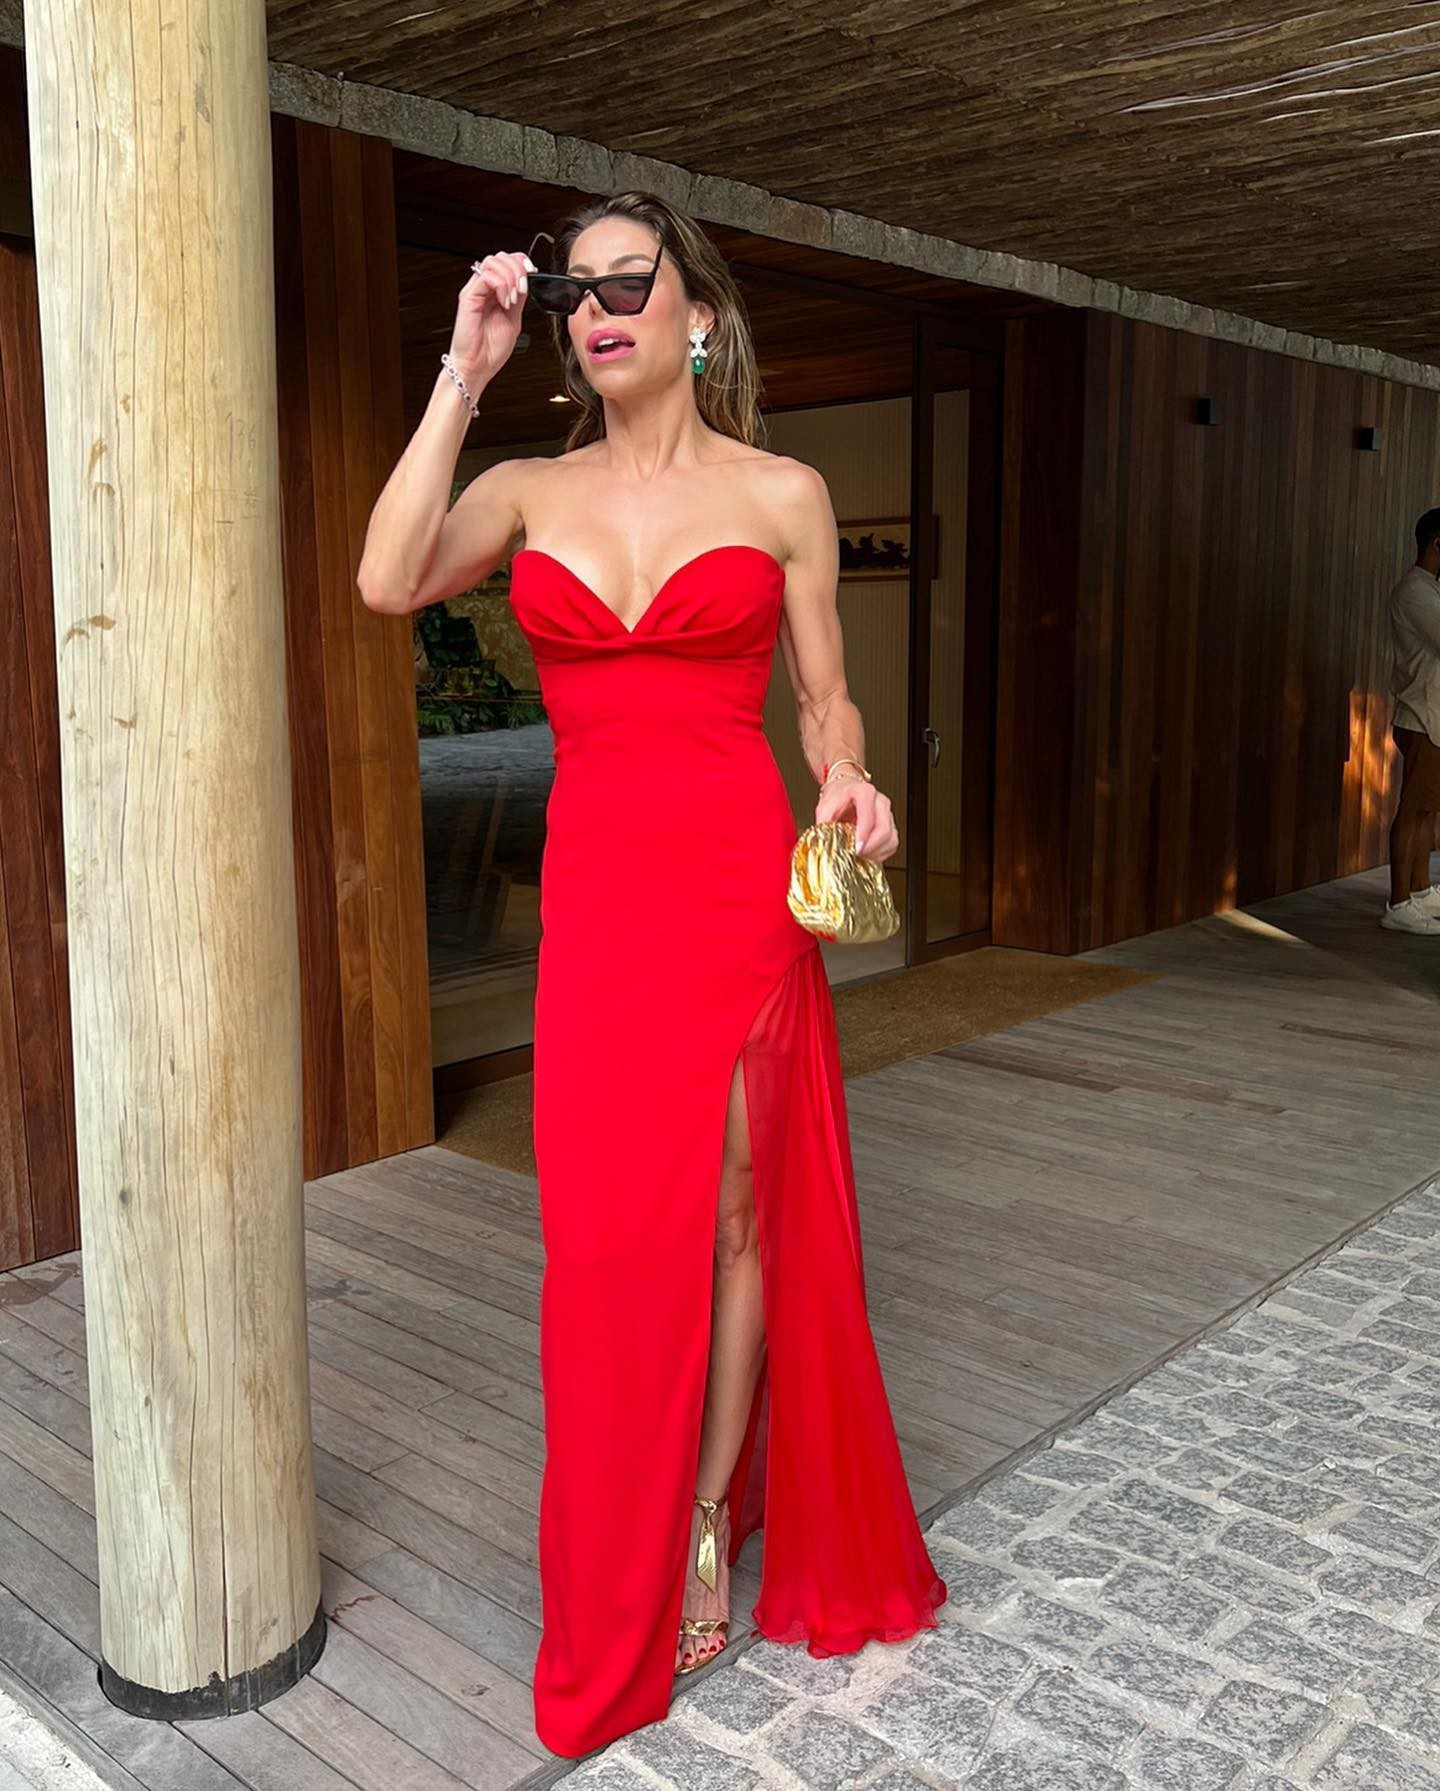 Daniella Cicarelli surge de vestido vermelho (Foto: reprodução/ Instagram)